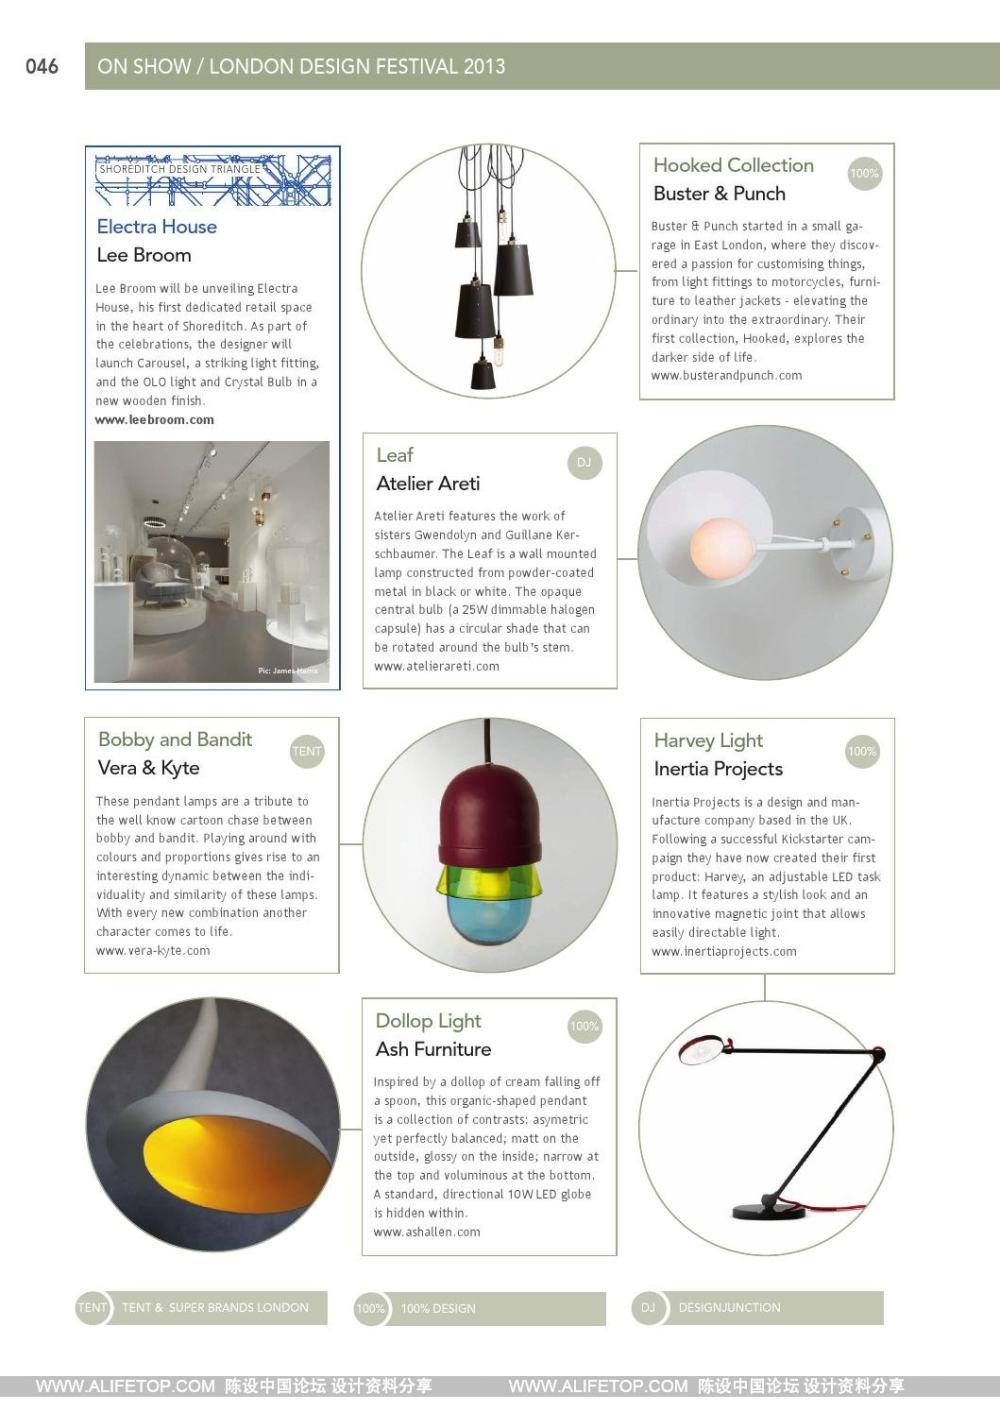 darc灯具照明设计杂志_darc灯具照明设计杂志 (46).jpg